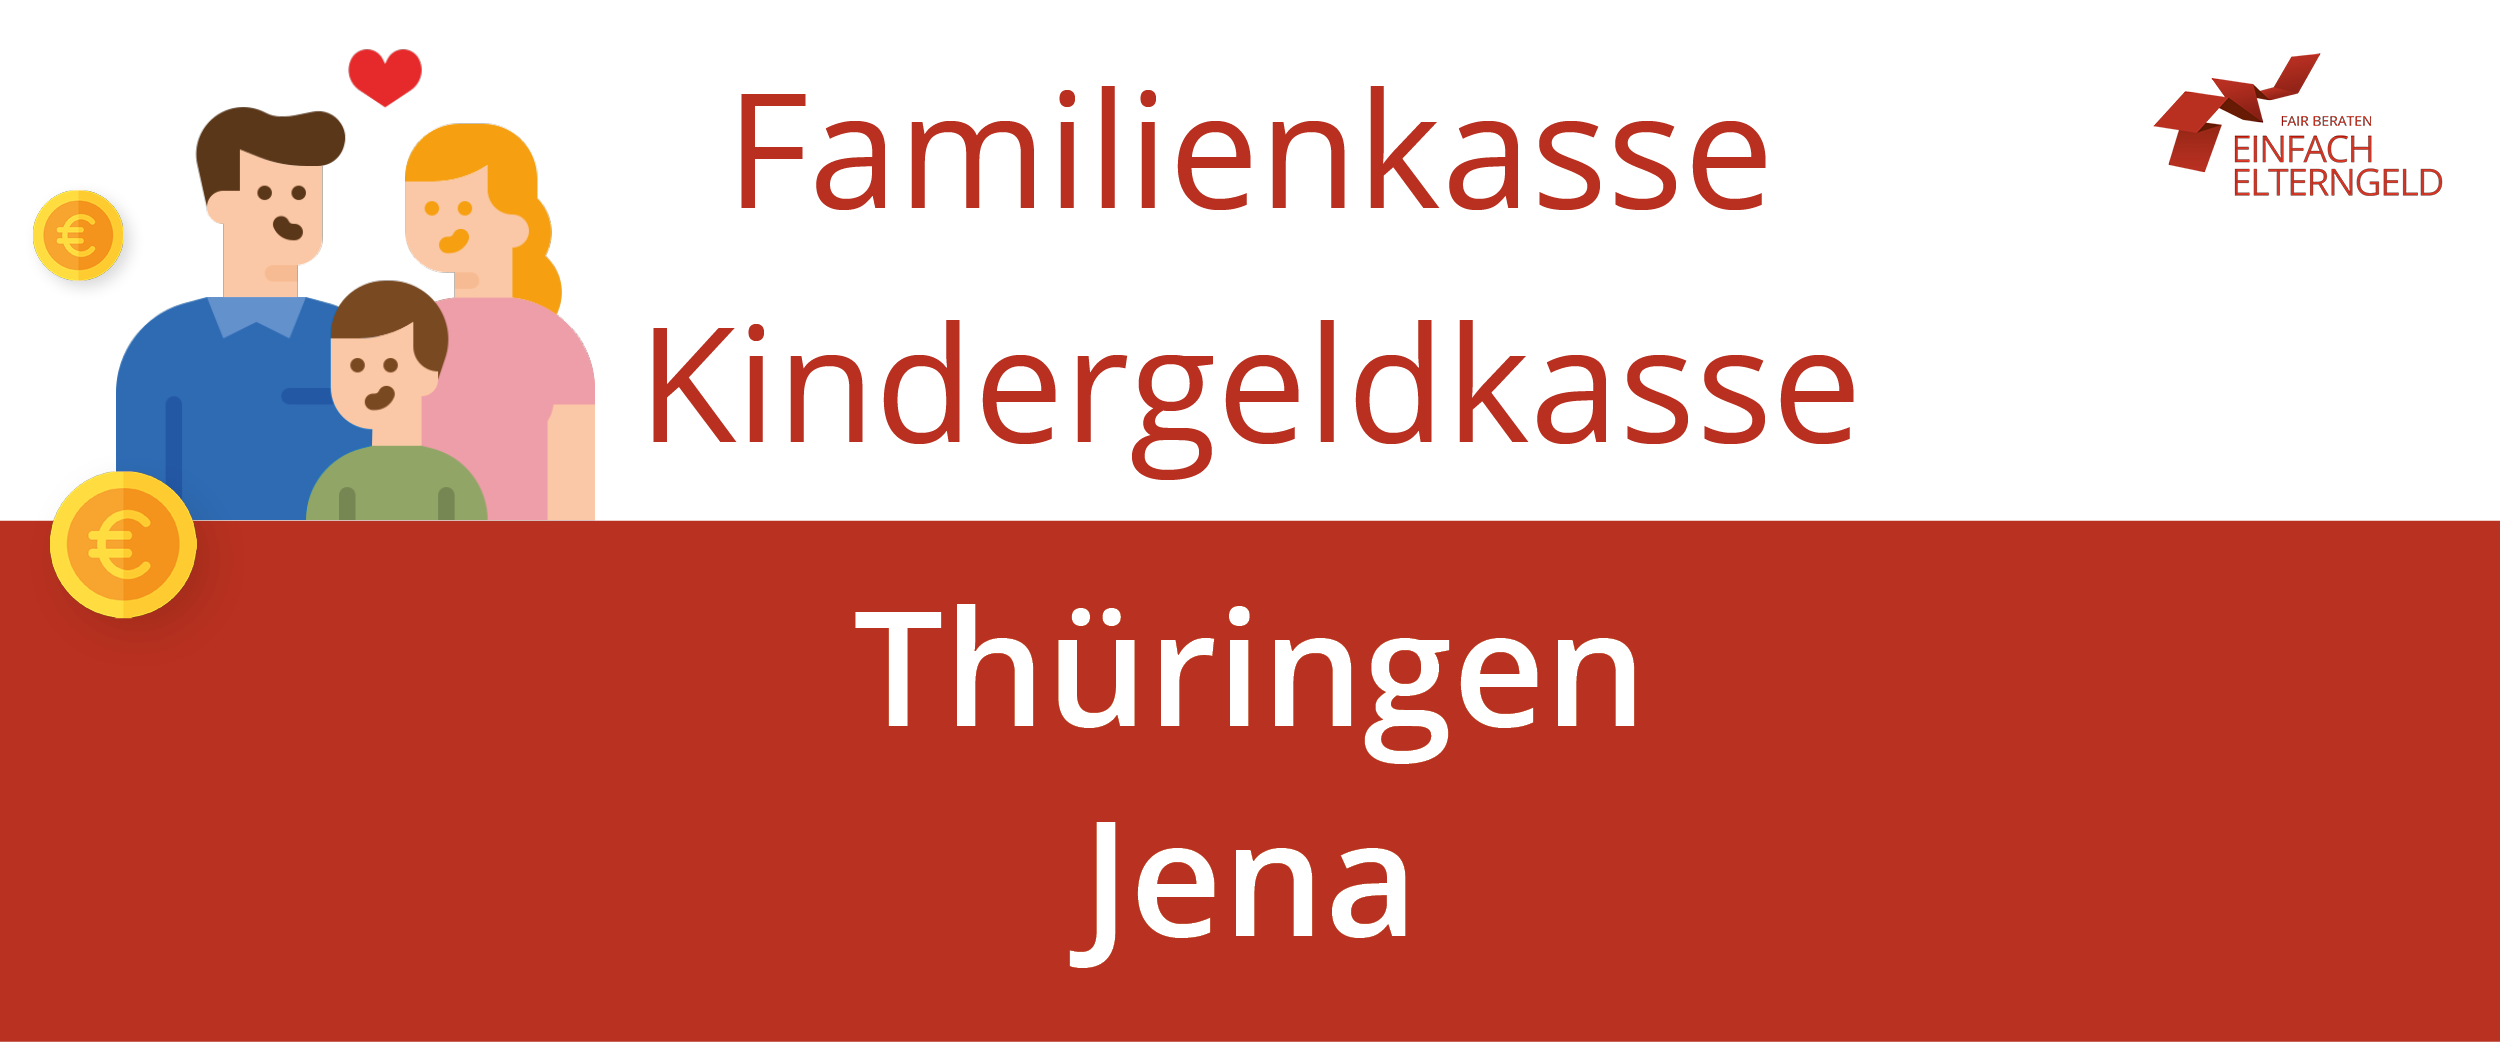 Familienkasse Kindergeldkasse Thüringen Jena - So erreichen Sie Ihre Familienkasse.